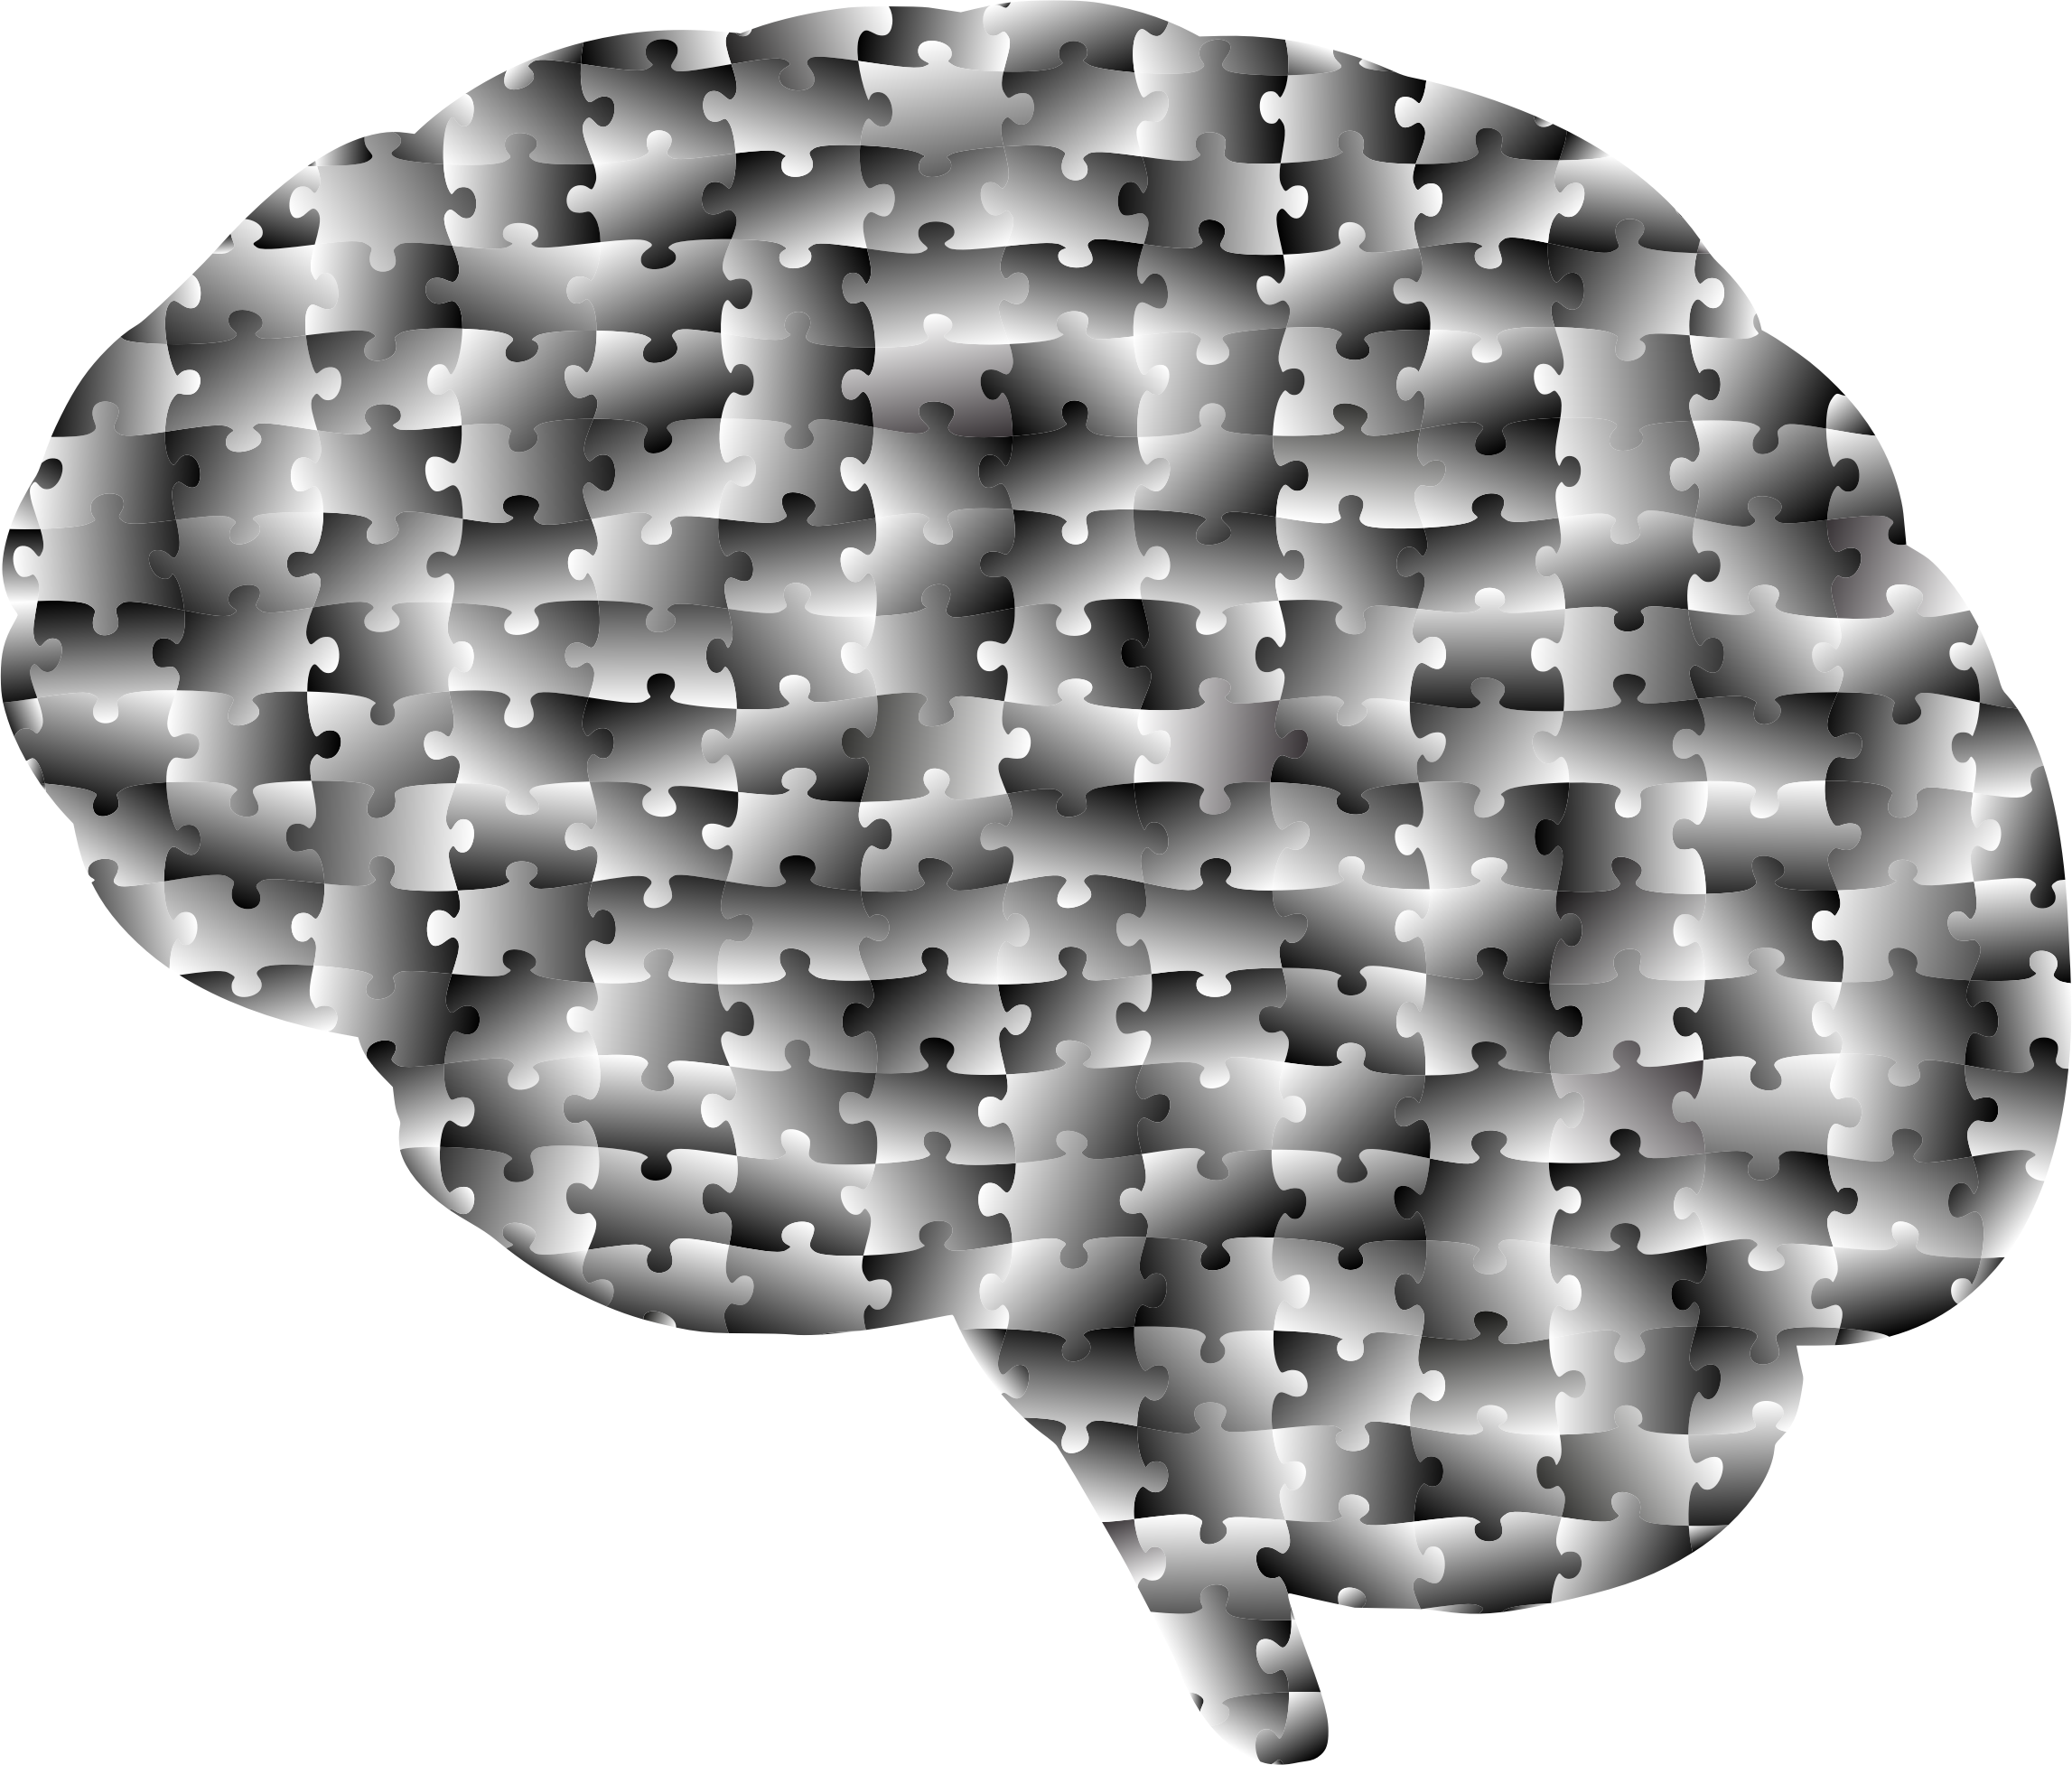 Psychology brain puzzle